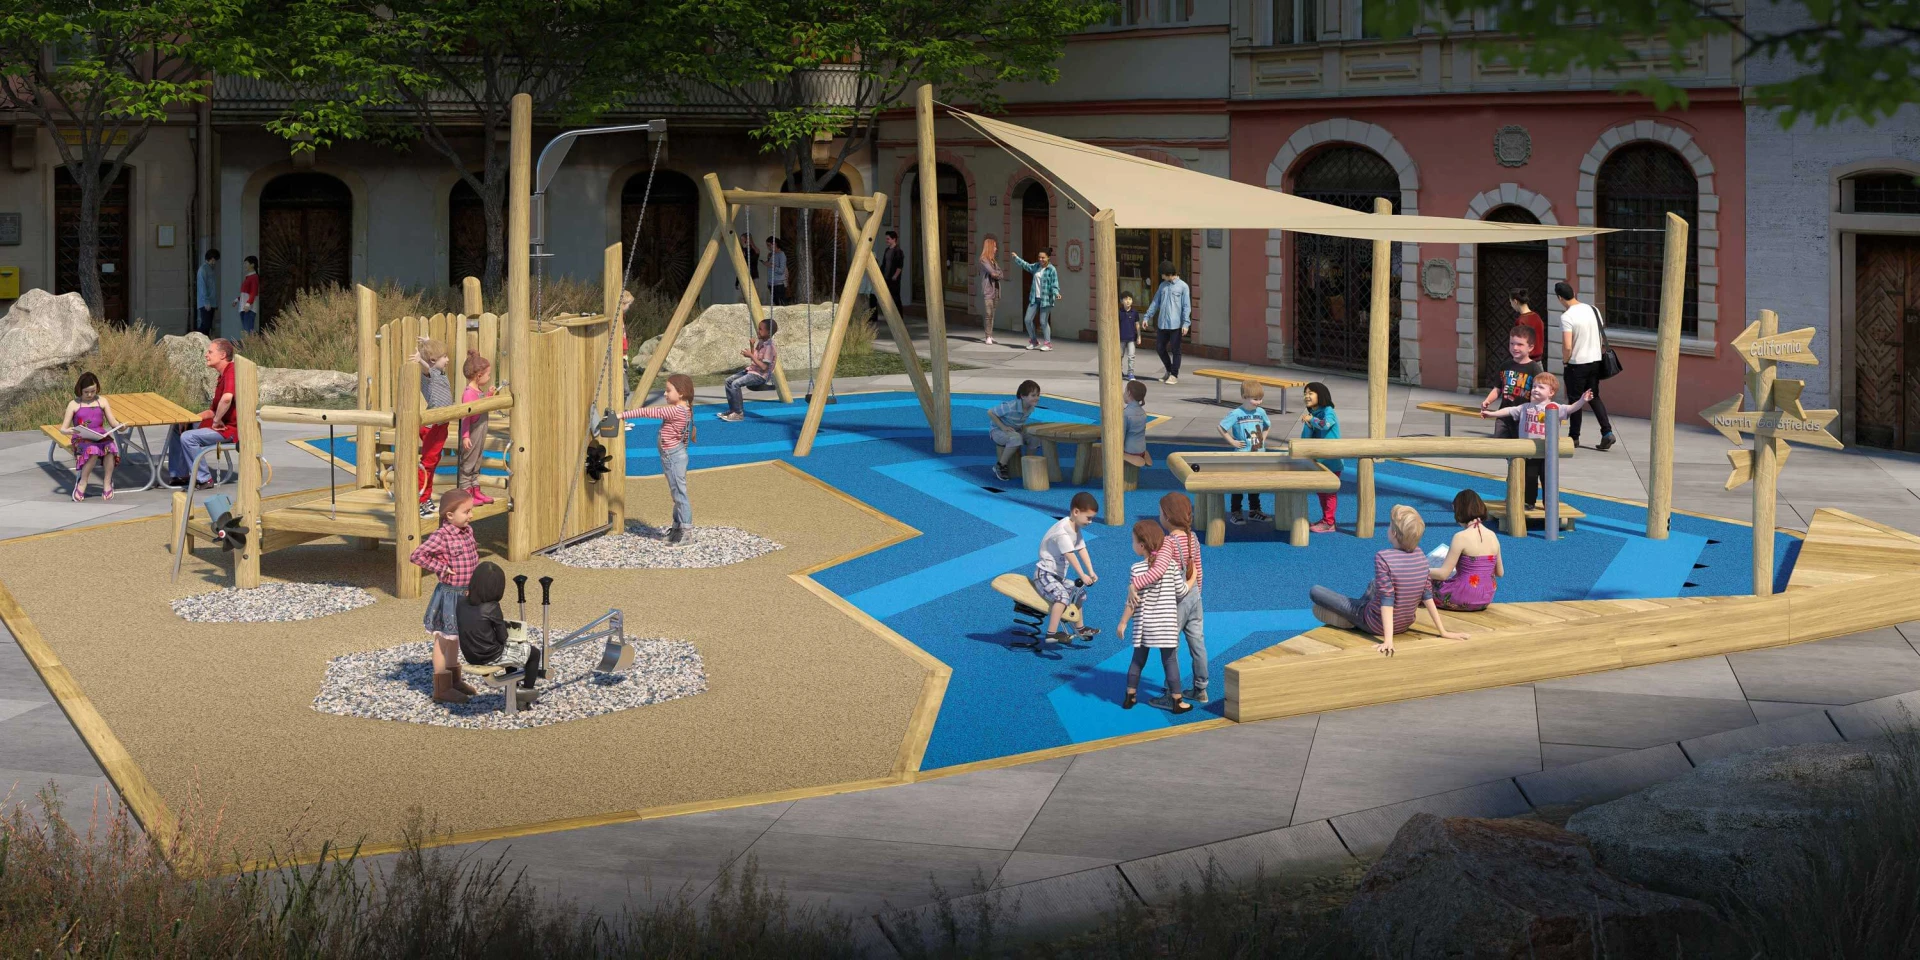 Idea de diseño de un parque infantil natural con el tema de la mina de oro